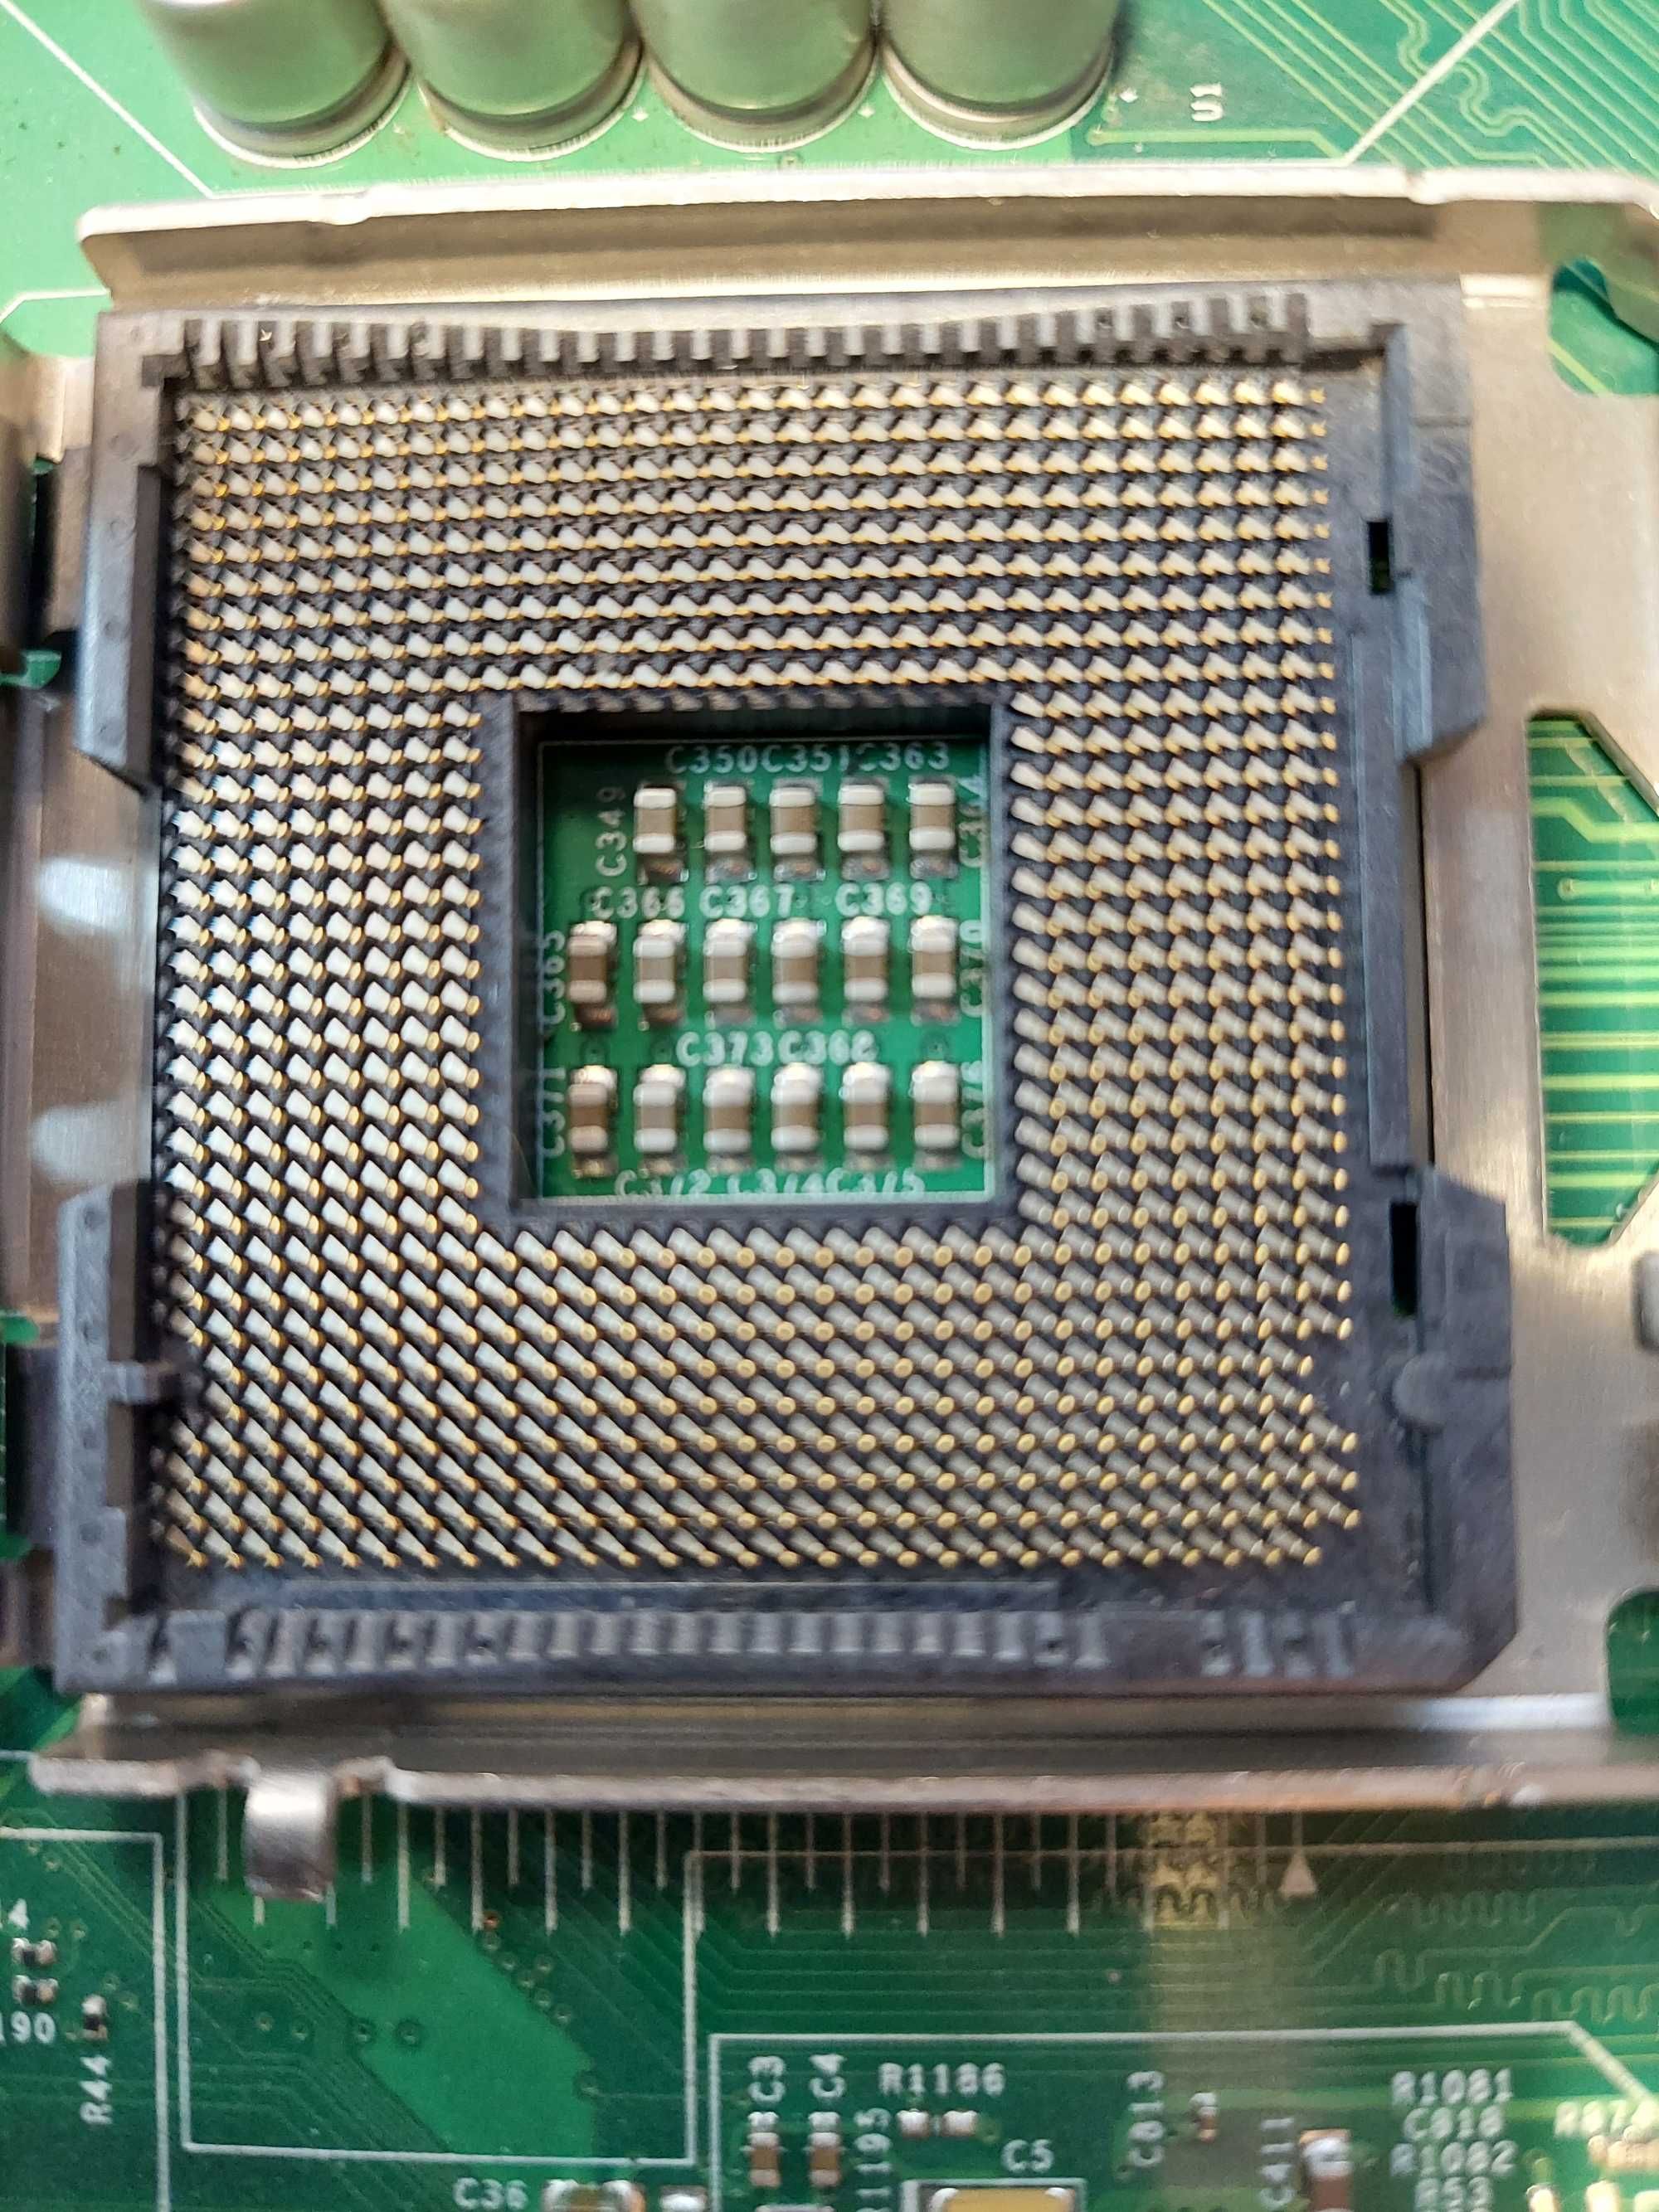 Płyta główna SuperMicro PDSM4+ s775 DDR2 SATA SCSI 68-PIN RJ-45